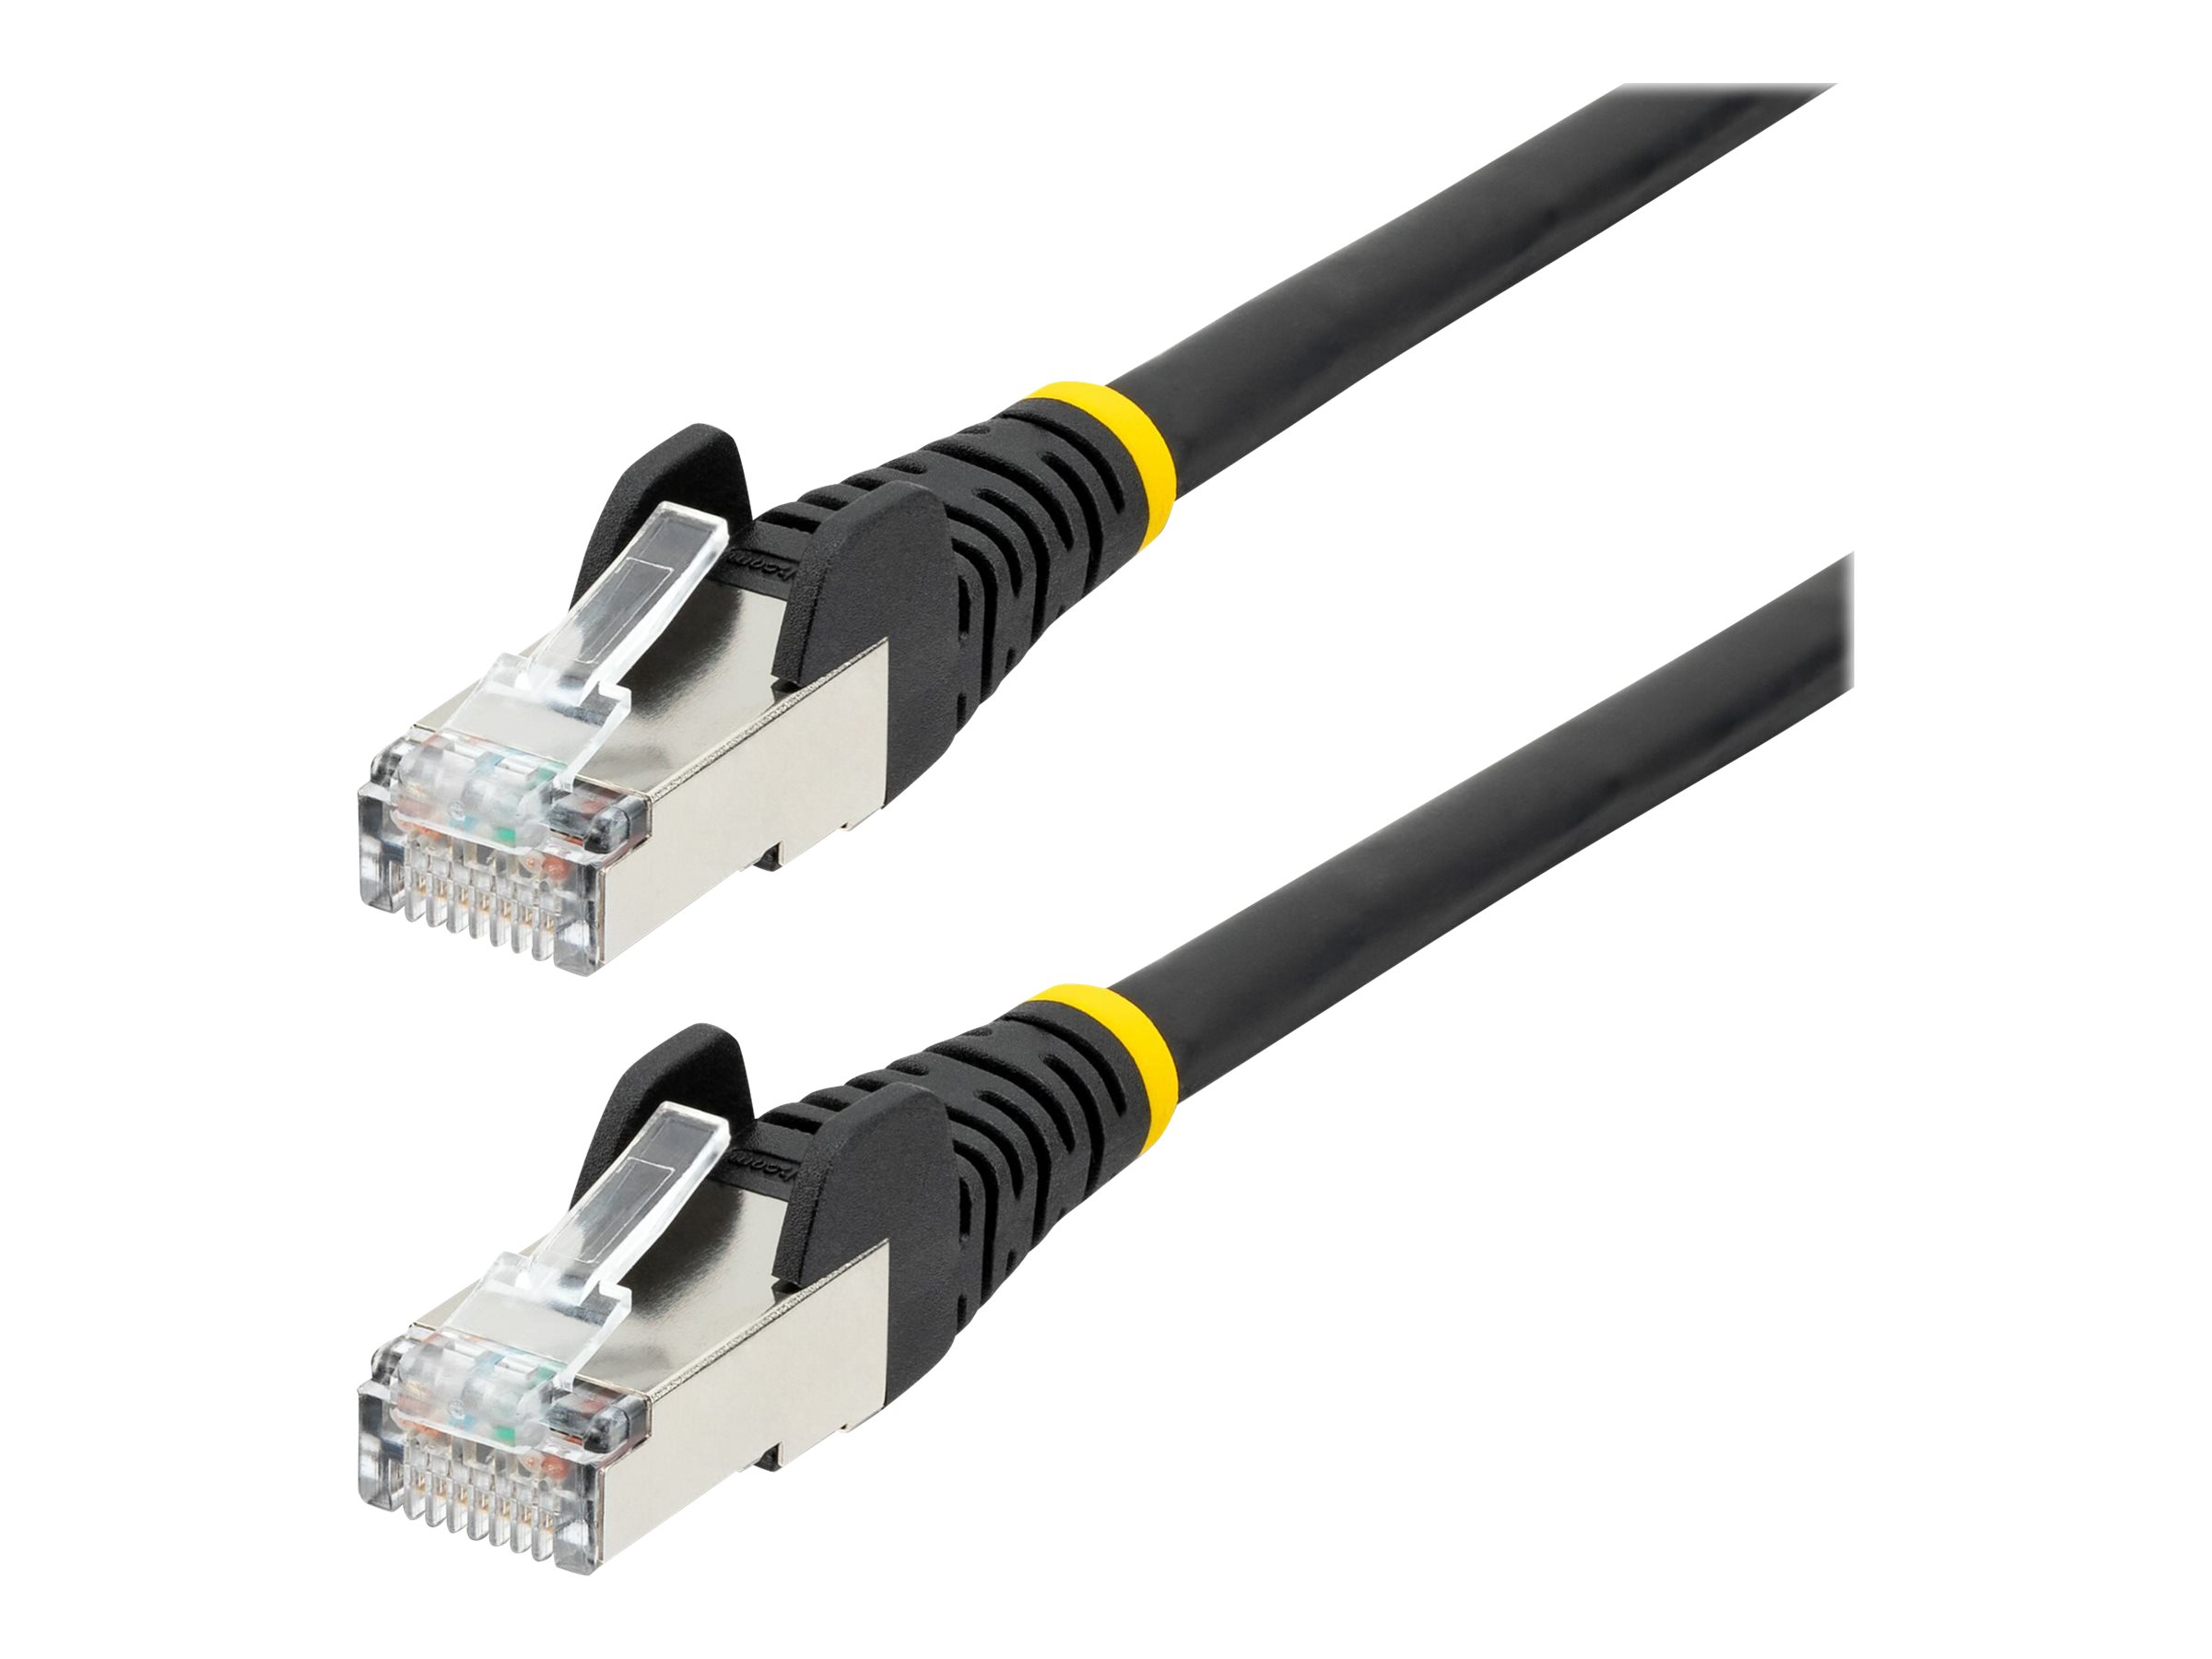 StarTech.com 5m CAT6a Ethernet Cable - Black - Low Smoke Zero Halogen (LSZH)